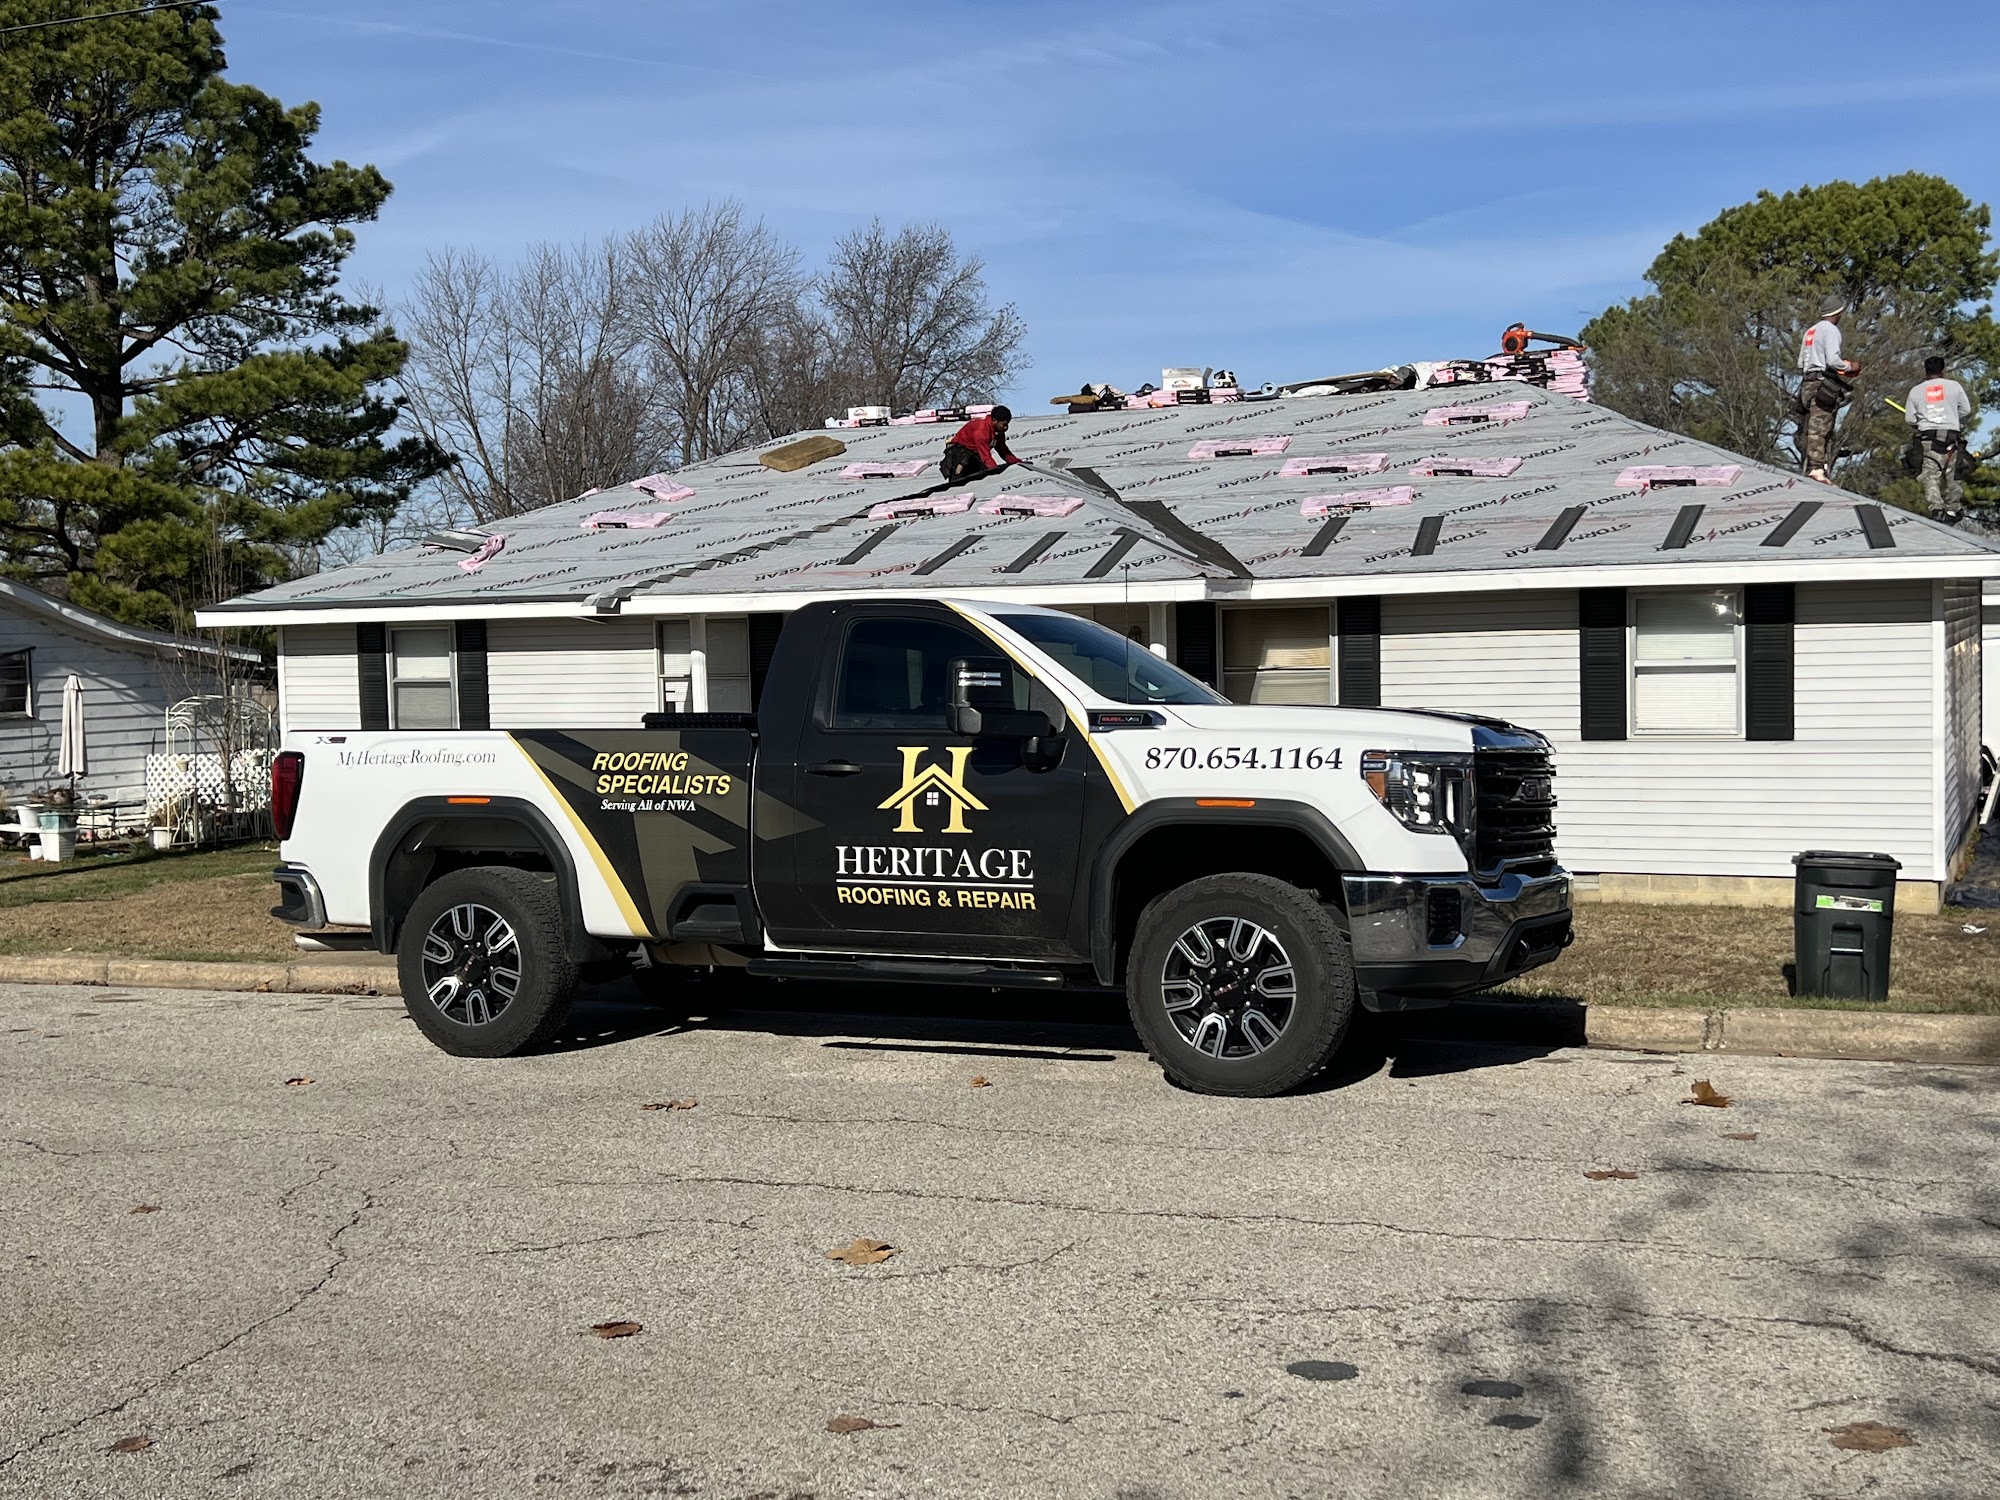 Heritage Roofing & Repair 3458 Arkansas State Hwy 221, Berryville Arkansas 72616